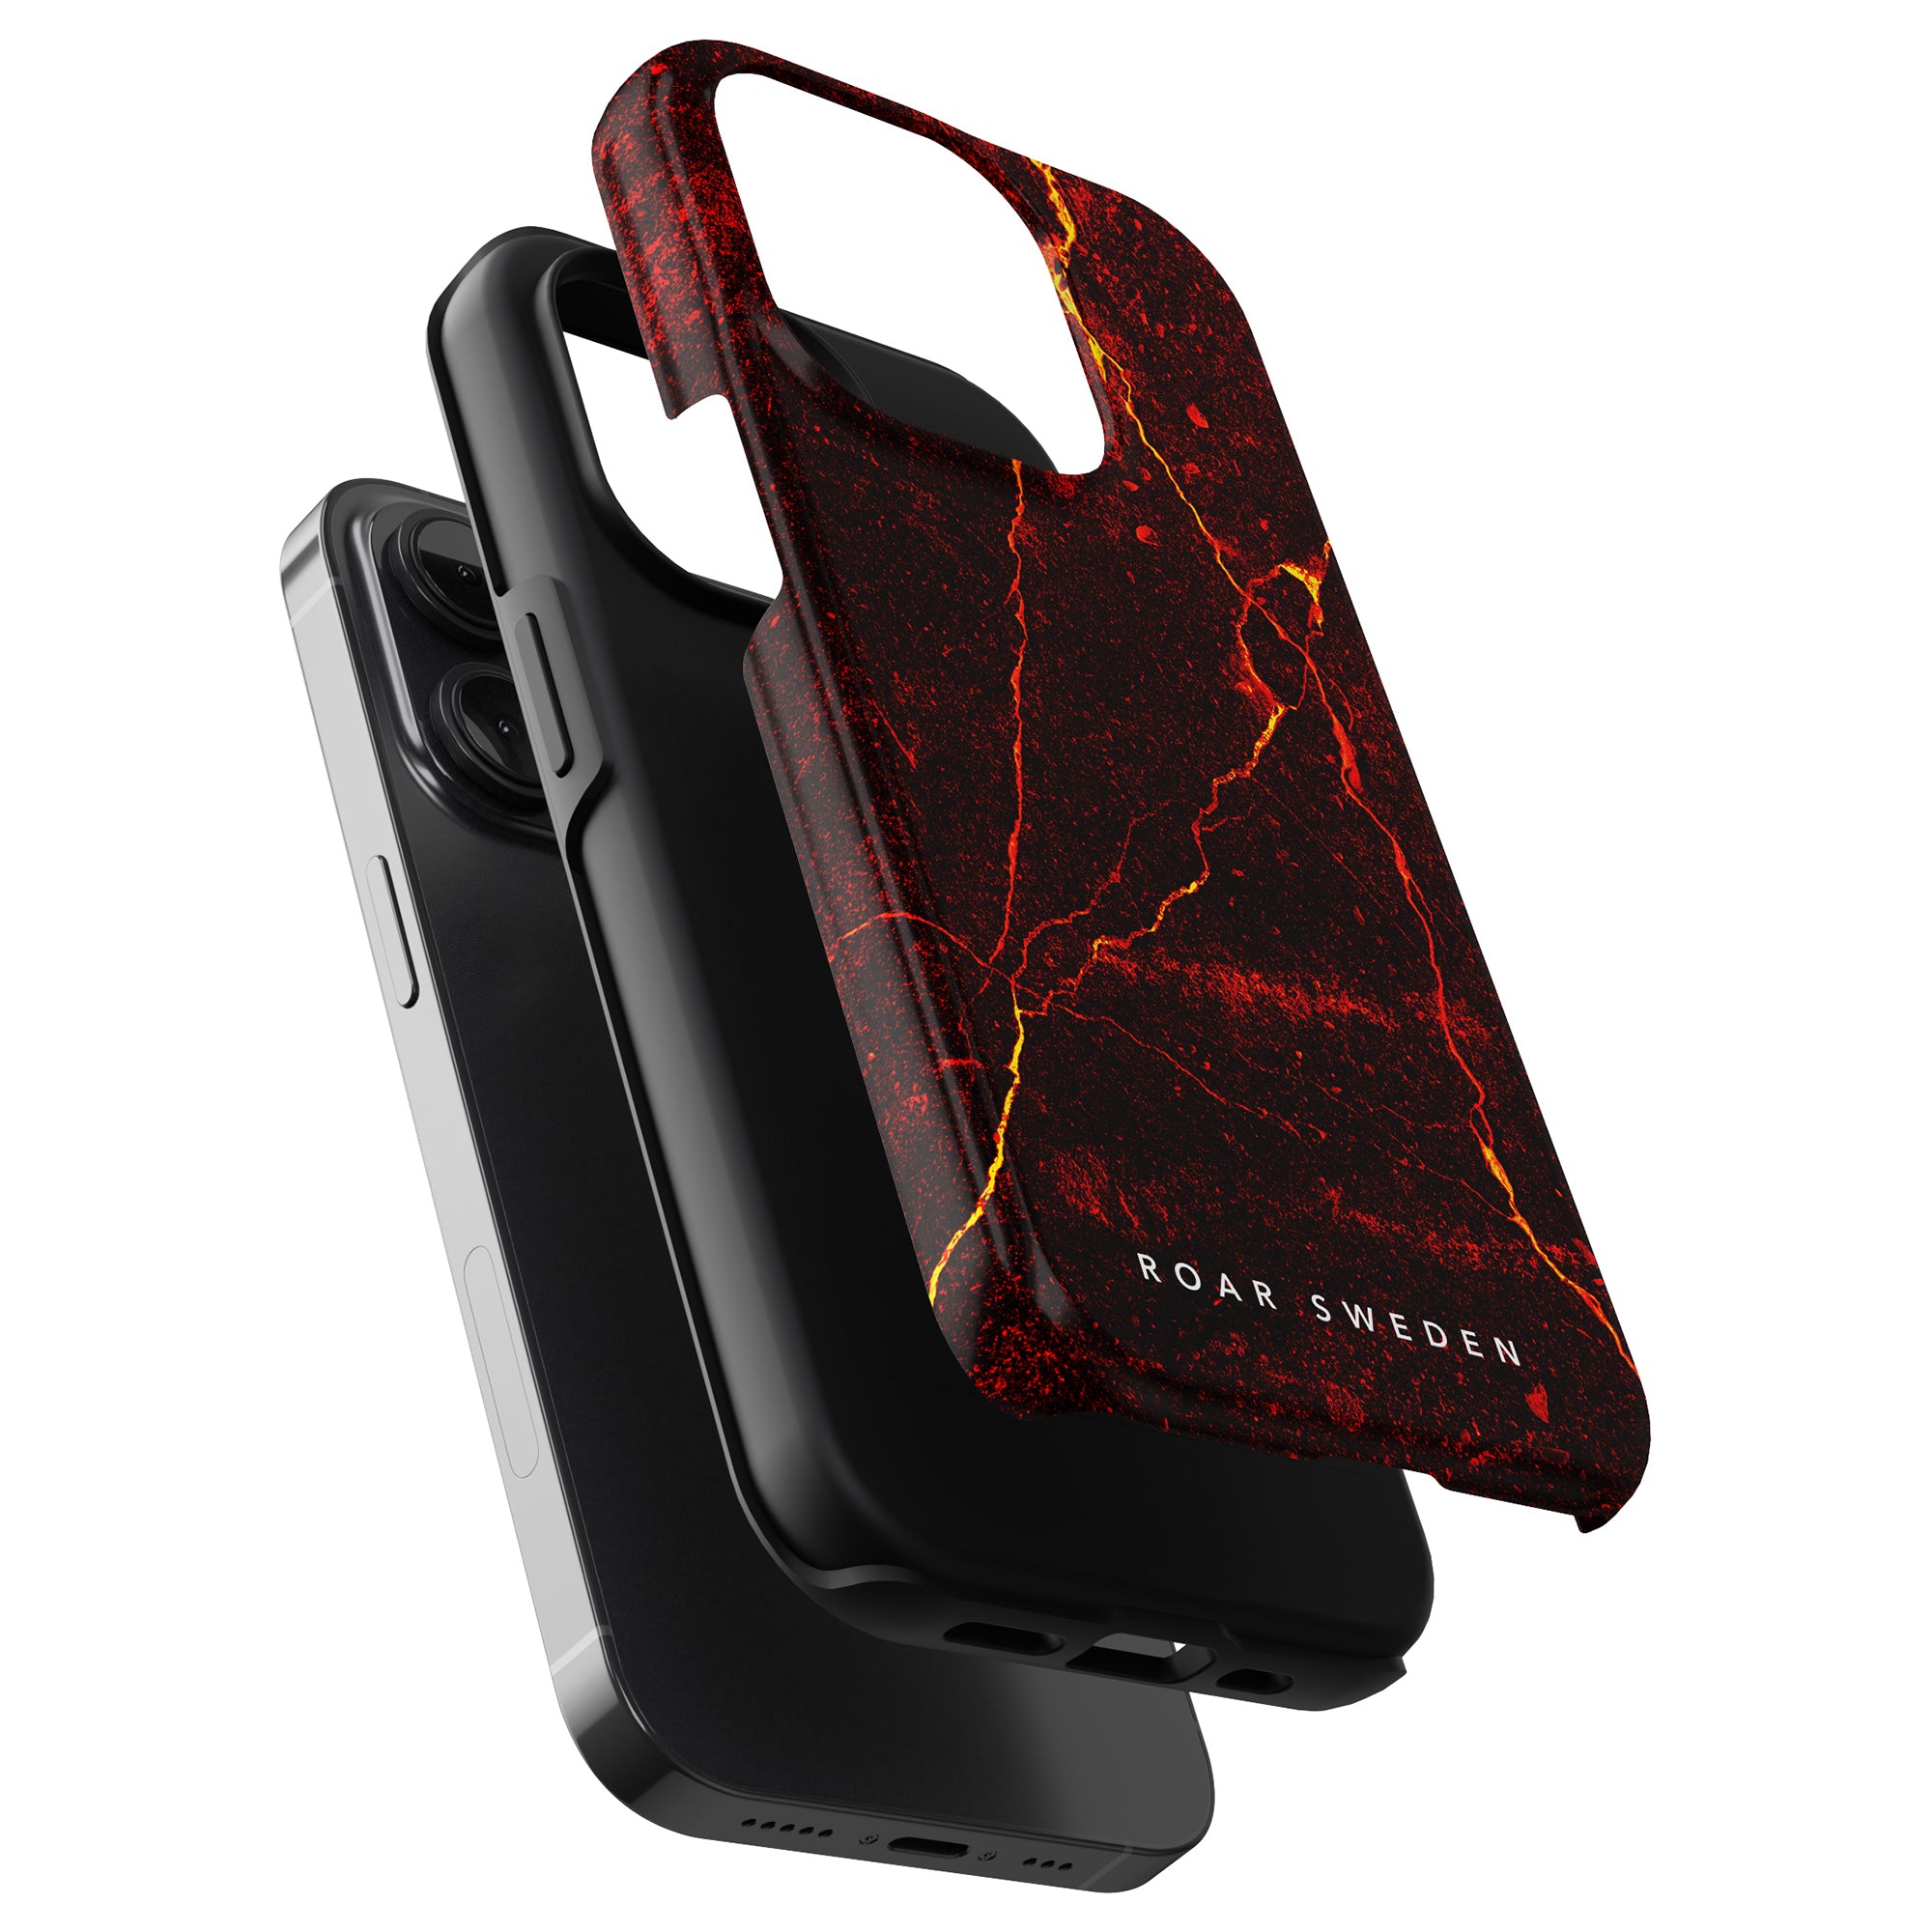 Roar Sweden's Caldera - Tough Case är ett elegant och snyggt smartphonefodral speciellt designat för iPhone 11 Pro. Detta högkvalitativa fodral har en modern design i svart och röd marmor